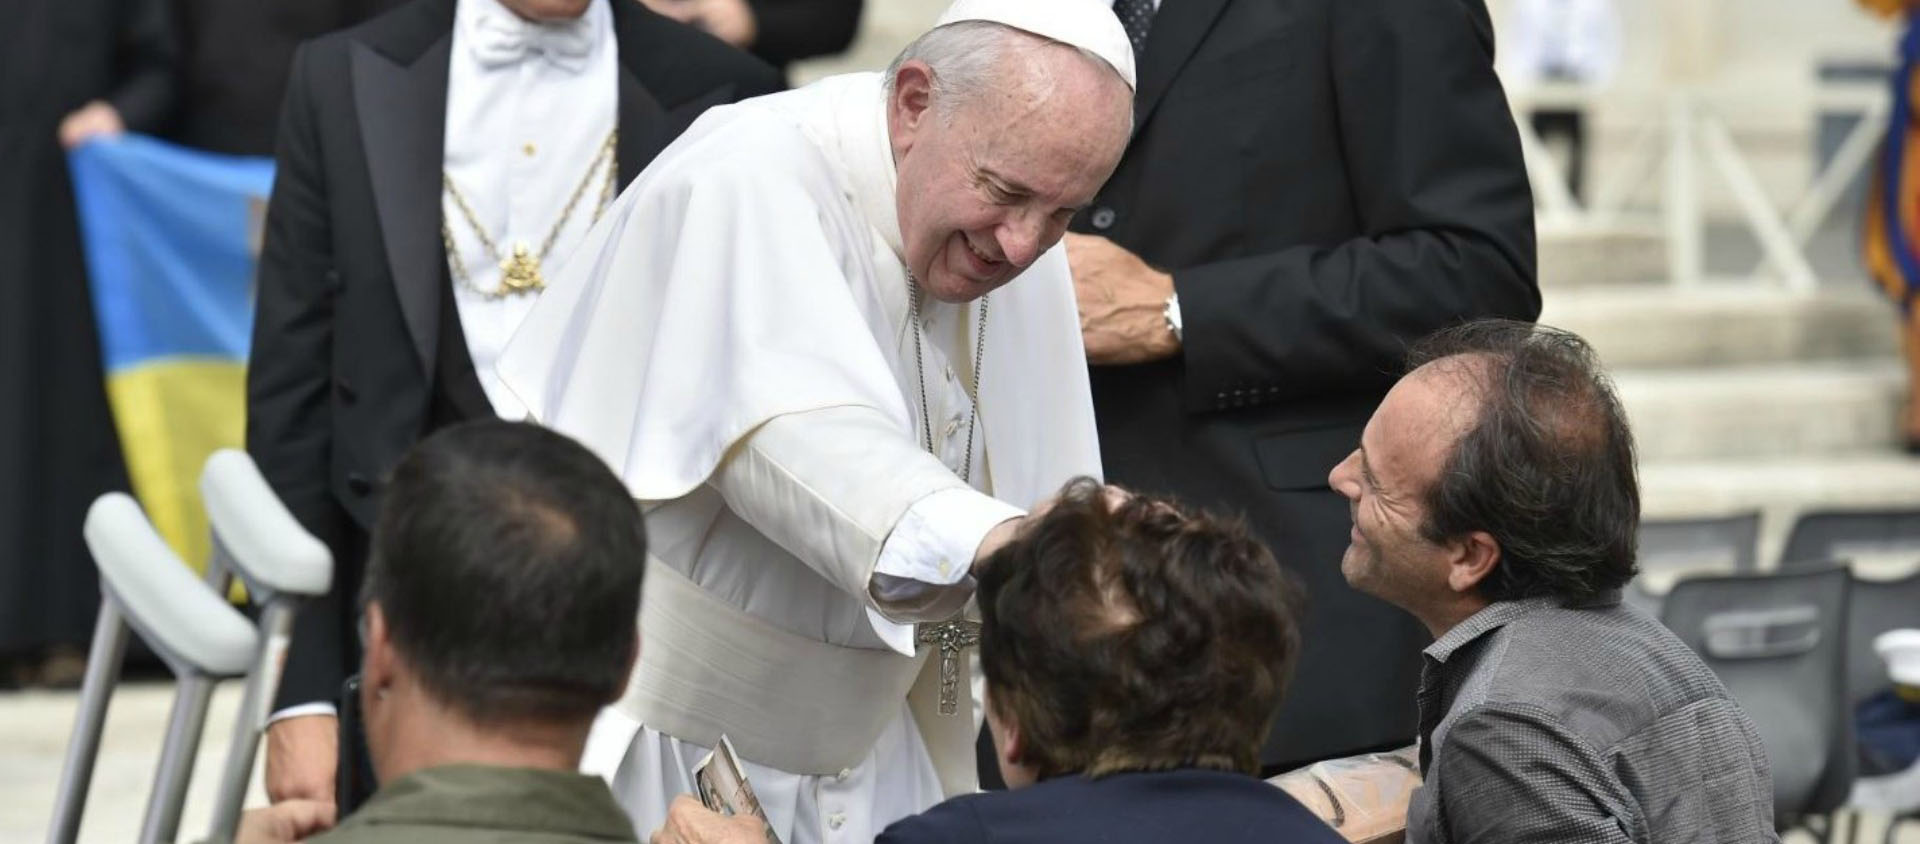 Le pape bénit une personne malade lors d'une audience générale | © Vatican Media